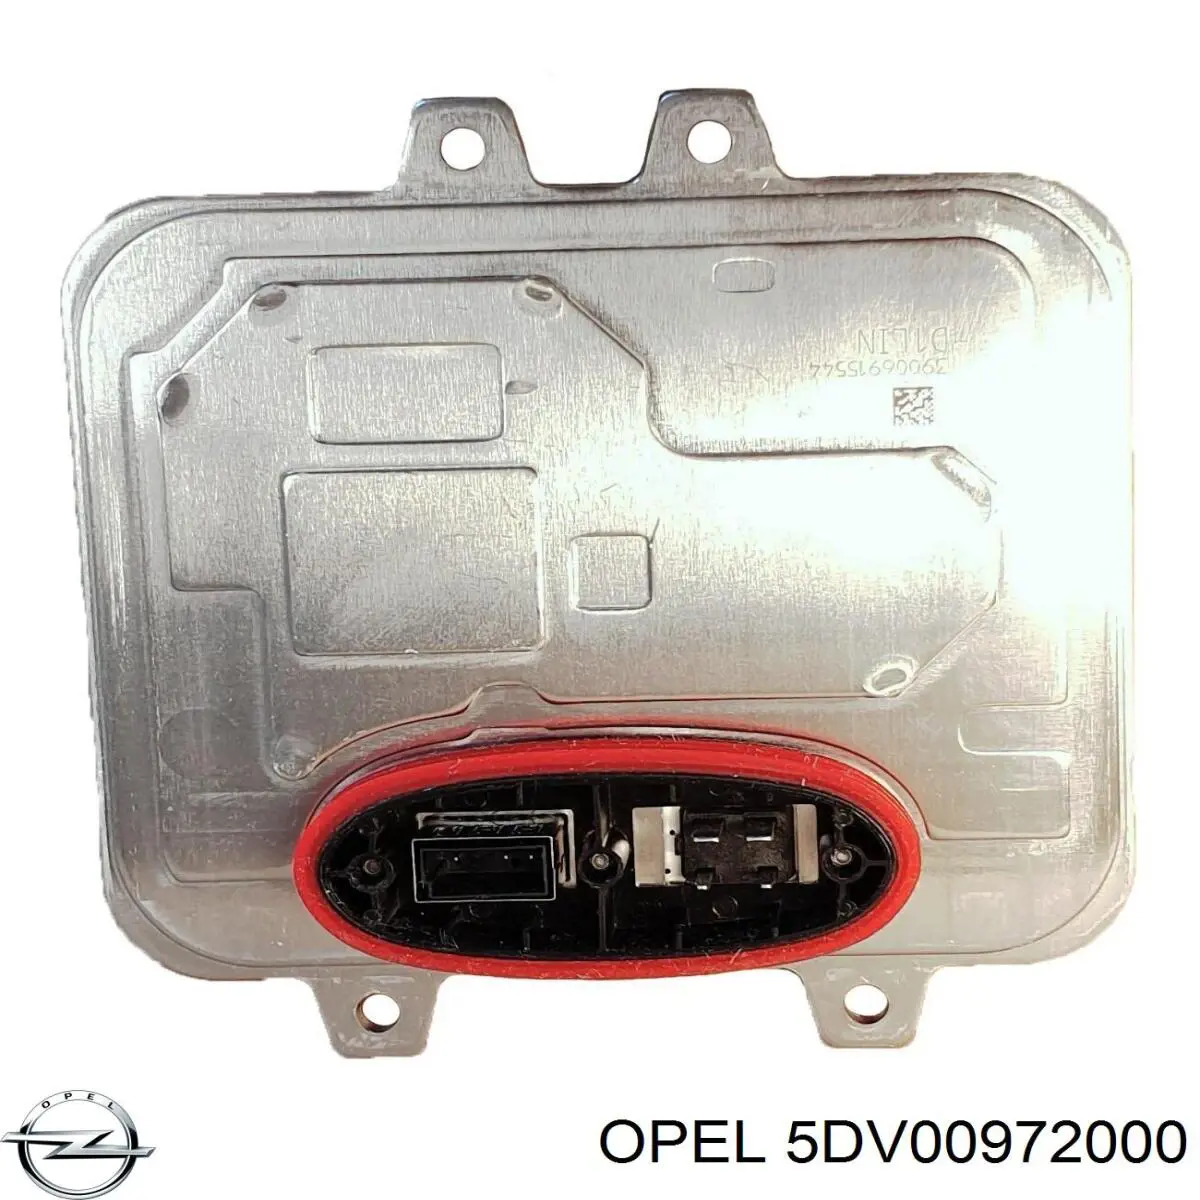 5DV00972000 Opel unidade de encendido (xénon)